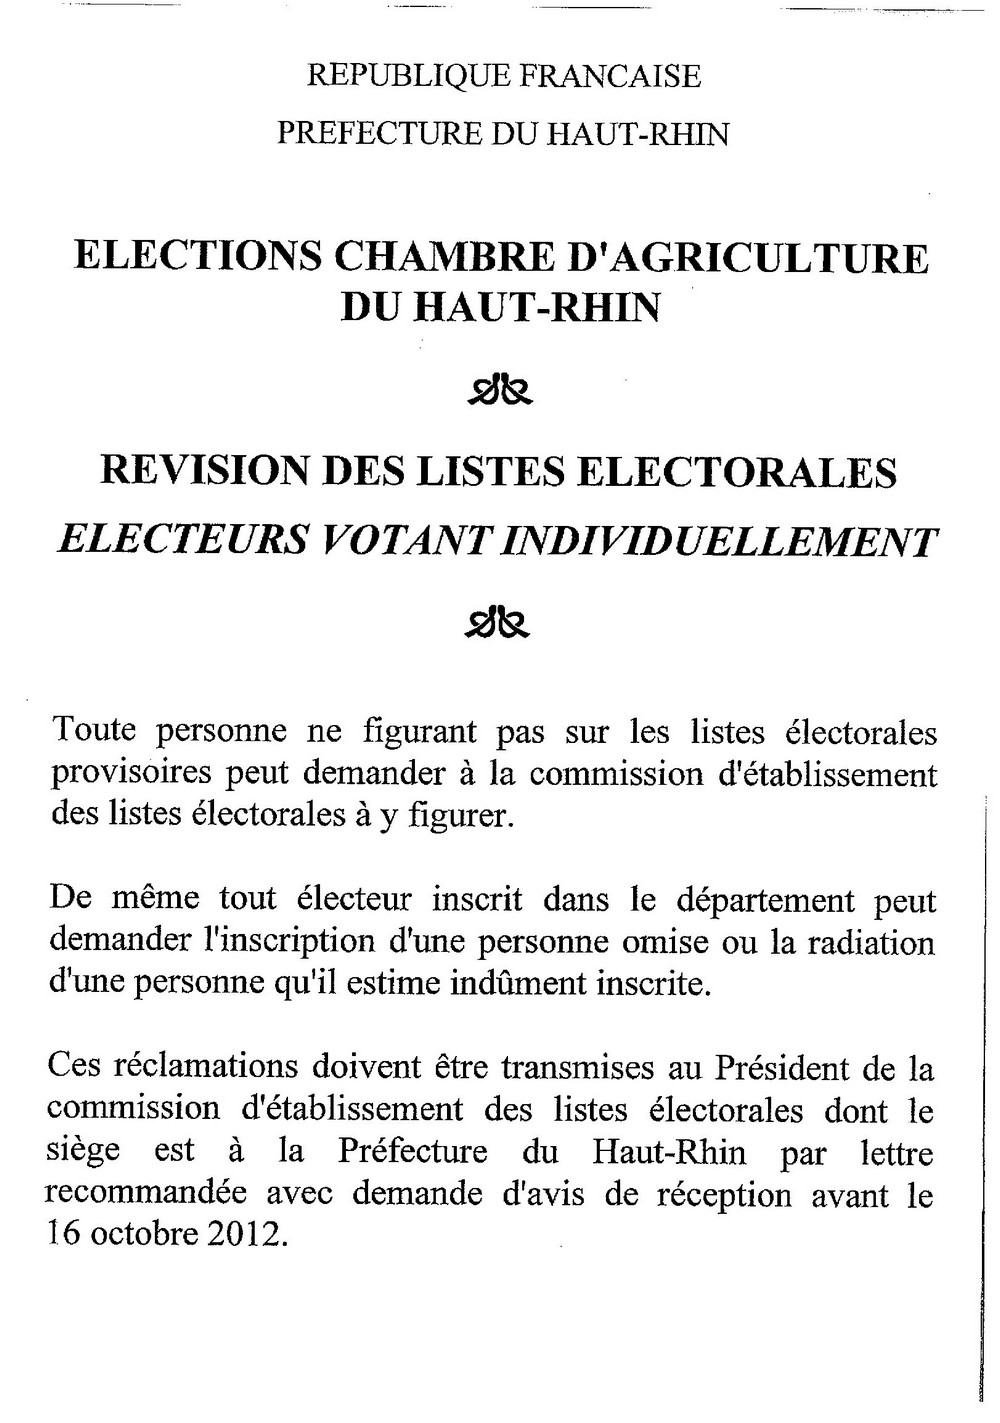 Avis de révision pour les élections de la chambre d'agriculture du Haut-Rhin